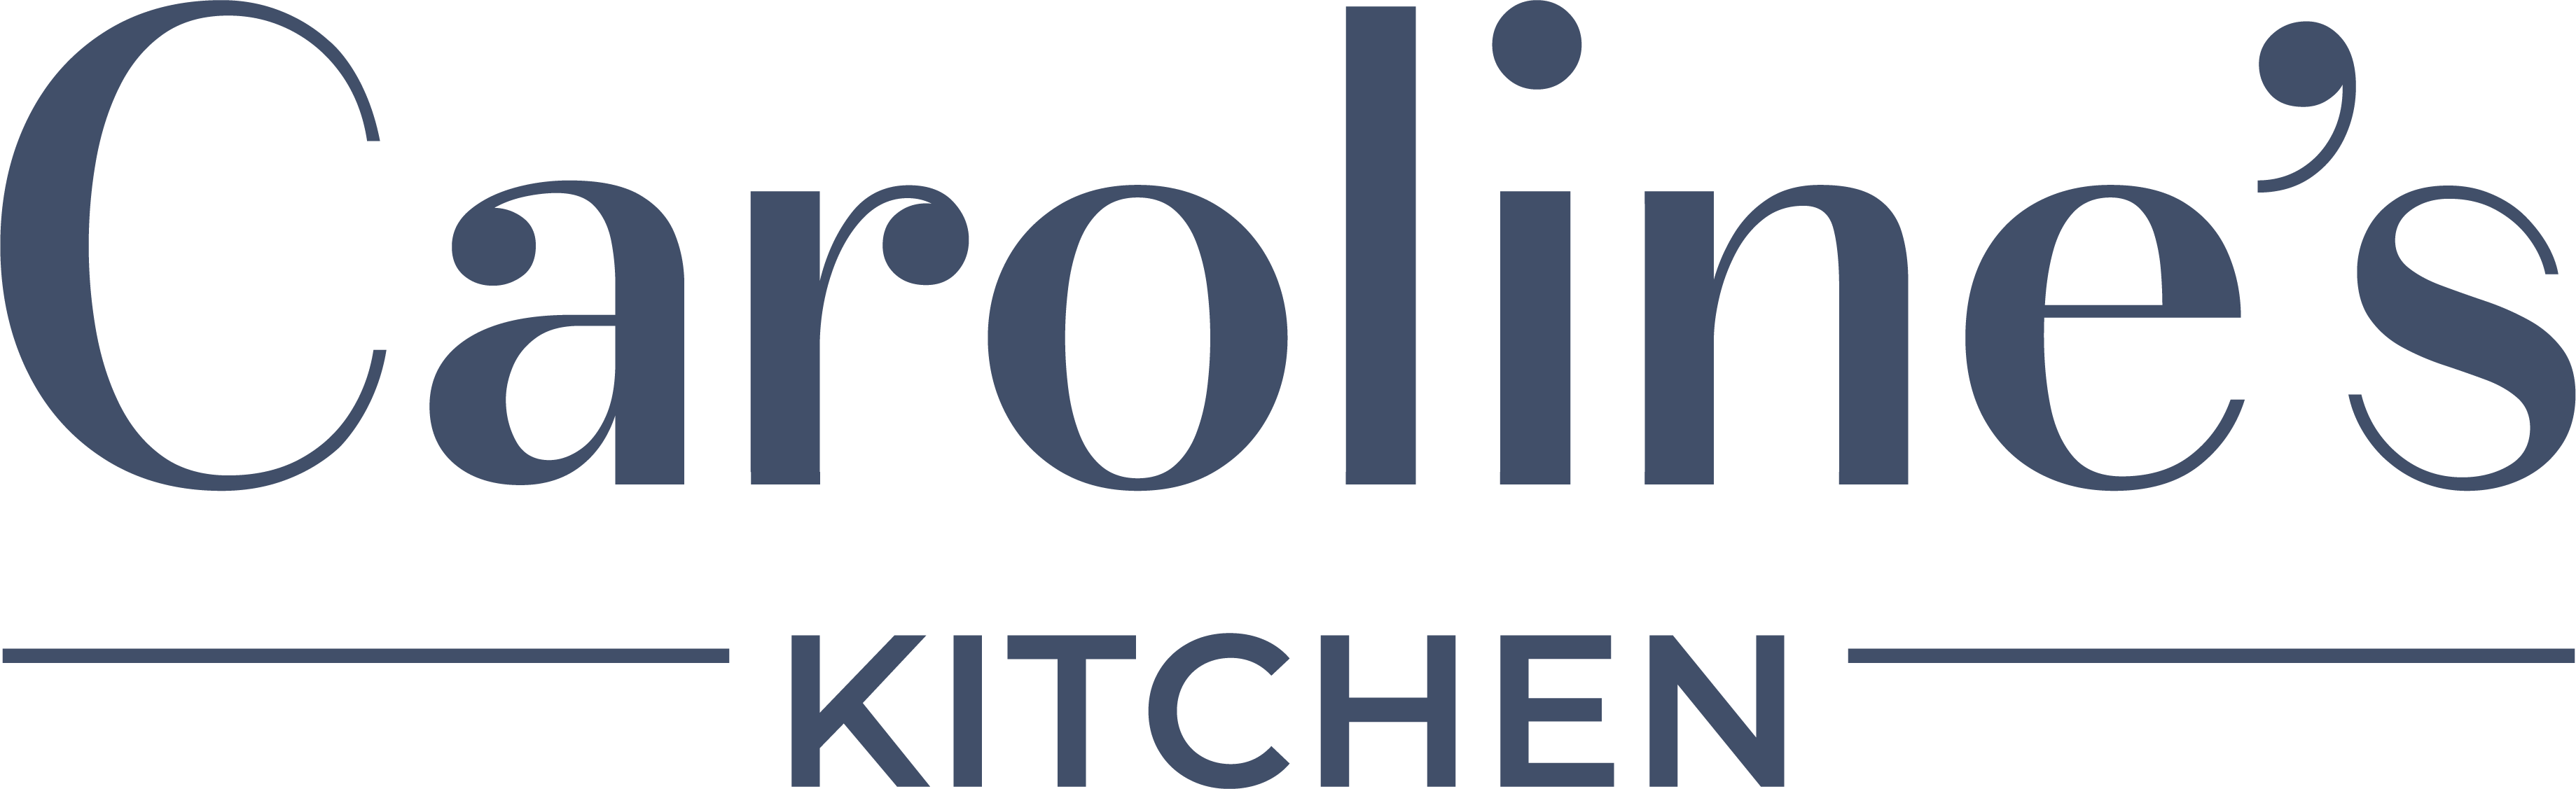 Chilli Carolines Kitchen